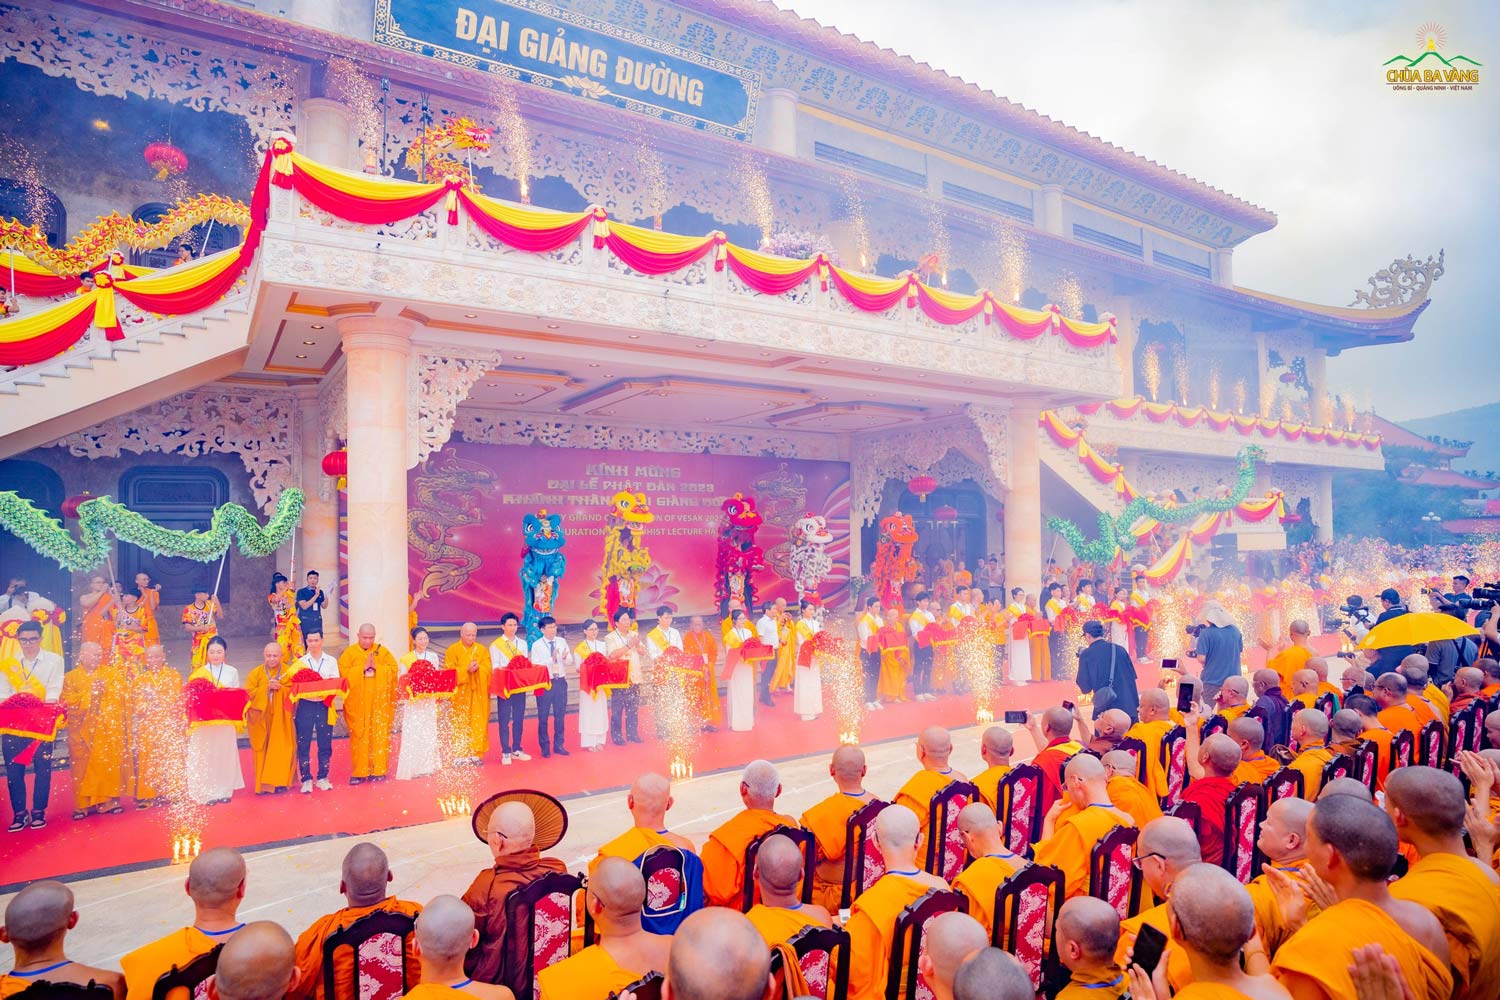 Chư Tôn đức lãnh đạo GHPG Việt Nam, đại biểu Phật giáo thế giới và các vị lãnh đạo, nguyên lãnh đạo Đảng, Nhà nước, chính quyền các cấp thực hiện nghi thức cắt băng khánh thành tòa giảng đường trên núi lớn nhất thế giới